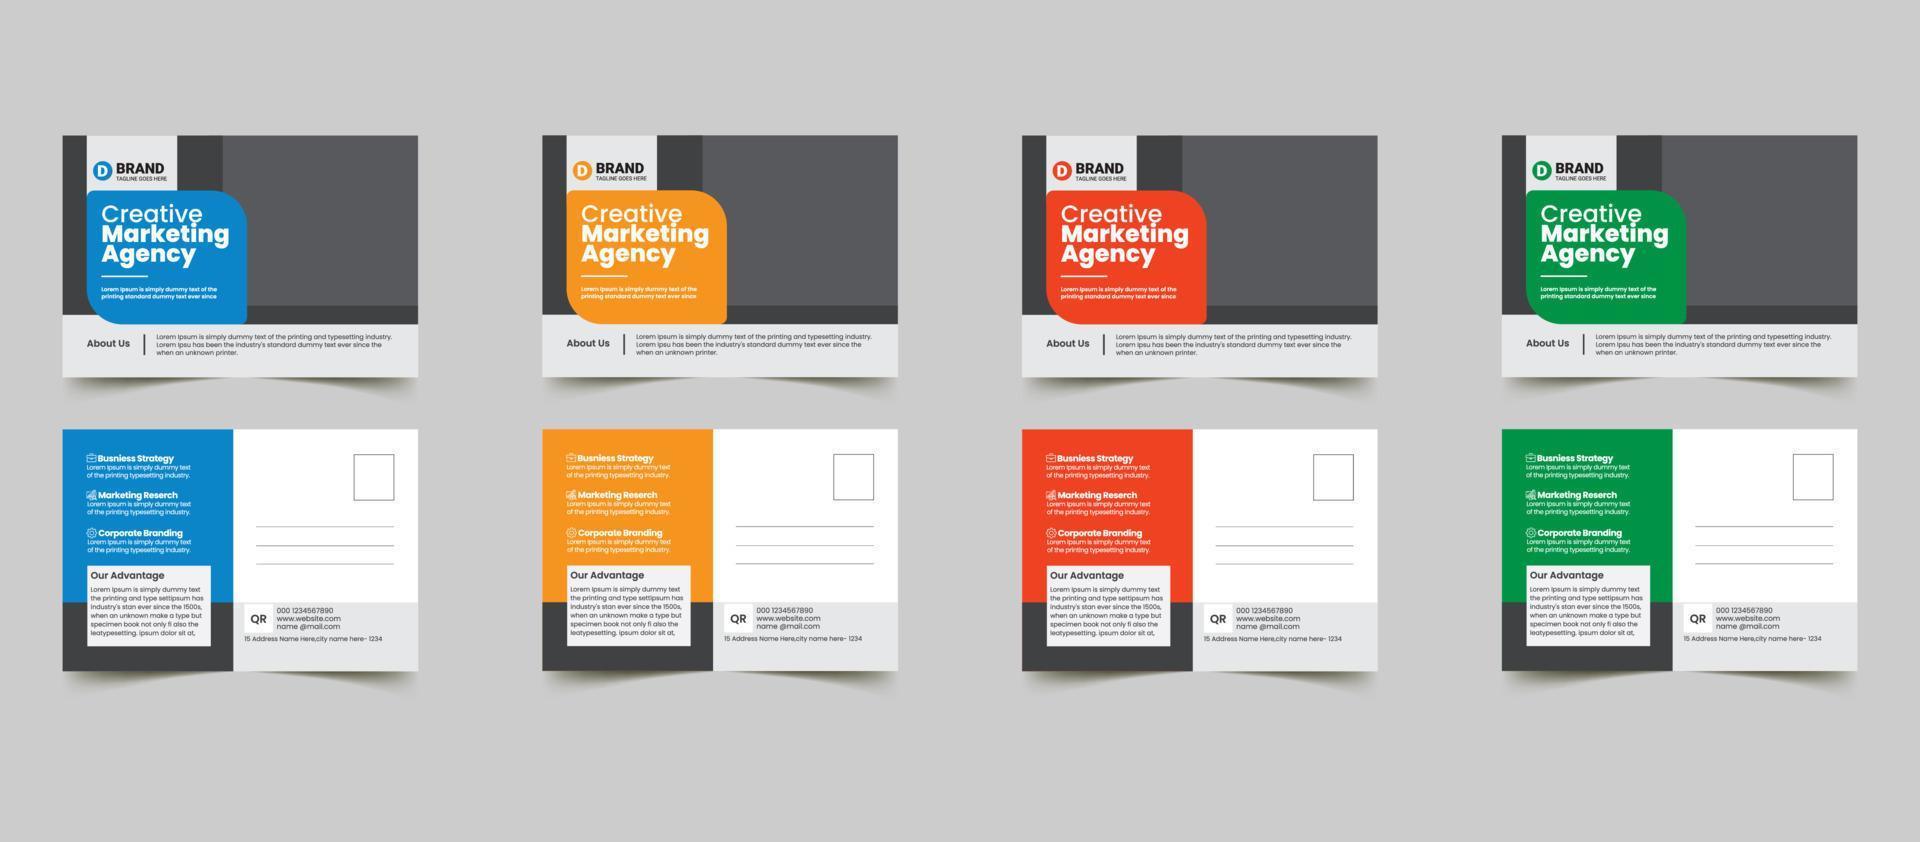 Corporate Professional Business Postkarte Design Template.Corporate Postkarte Design Vektor Vorlage zum Öffnen von Invitation.Event Kartendesign, Eddm Postkartenvorlage, Einladungsdesign